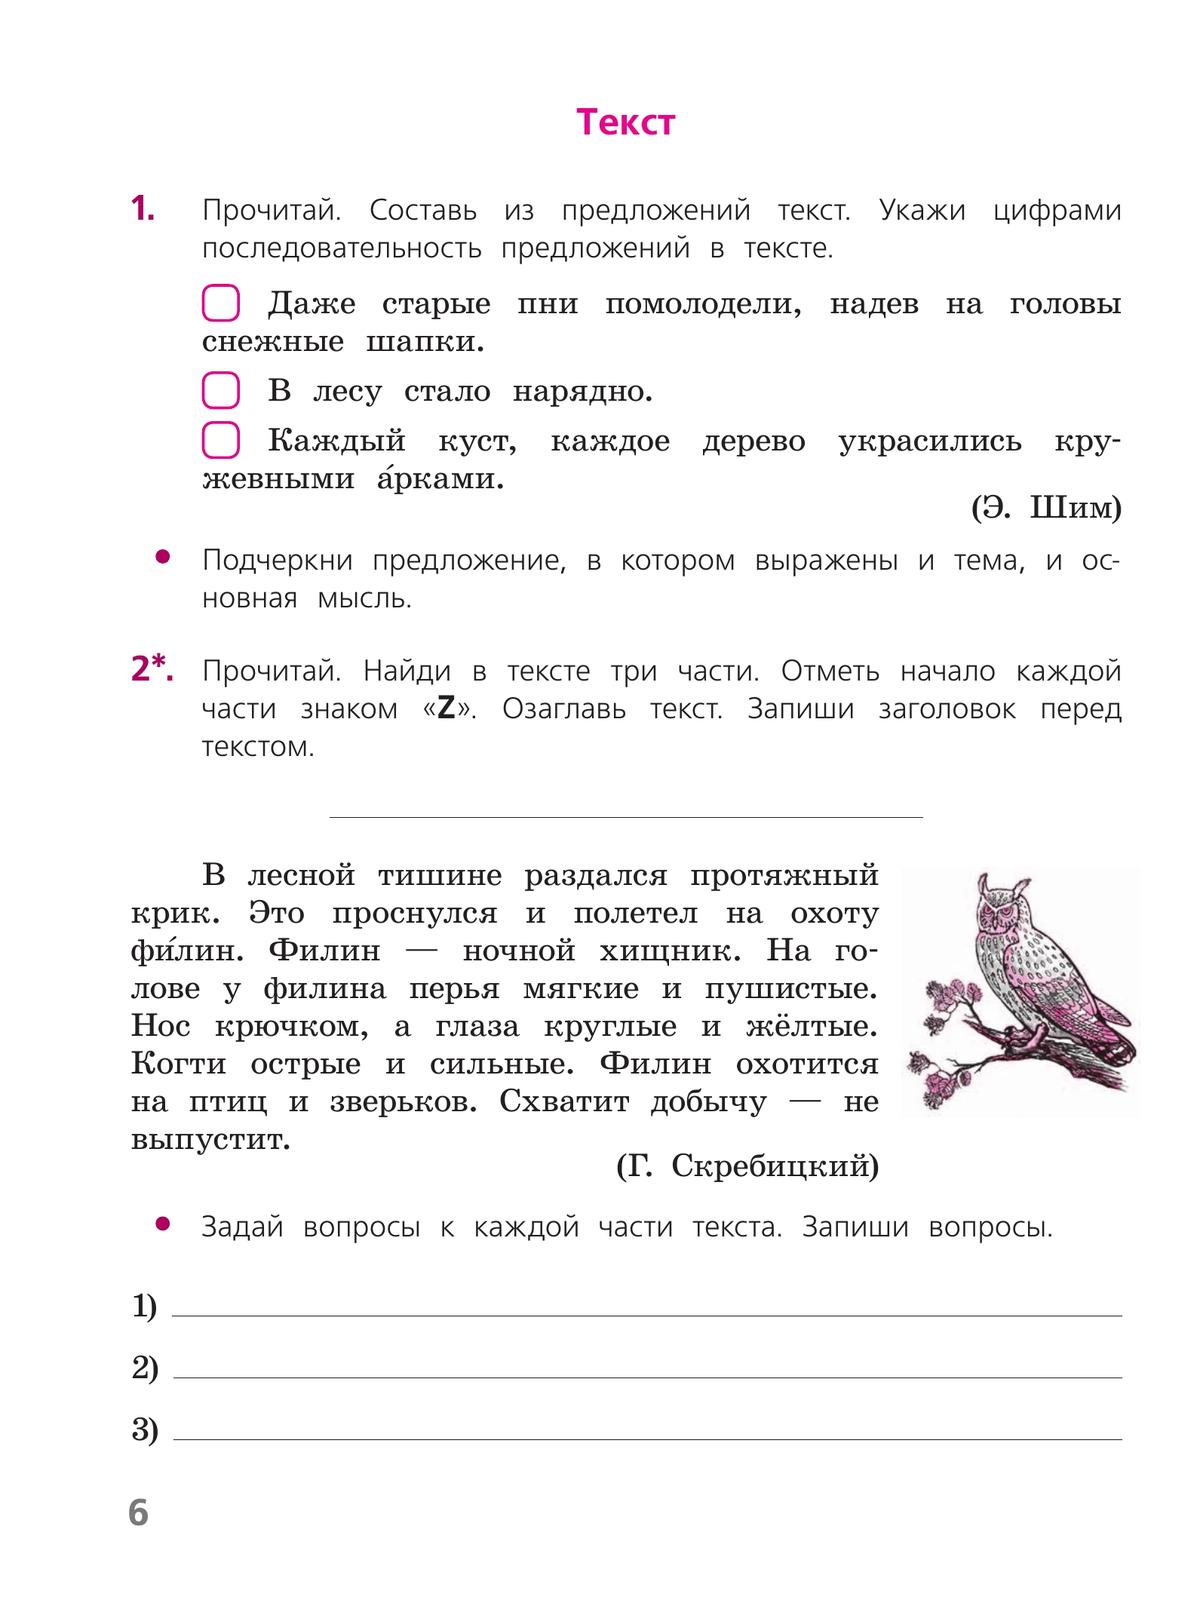 Русский язык. Тетрадь учебных достижений. 4 класс 5